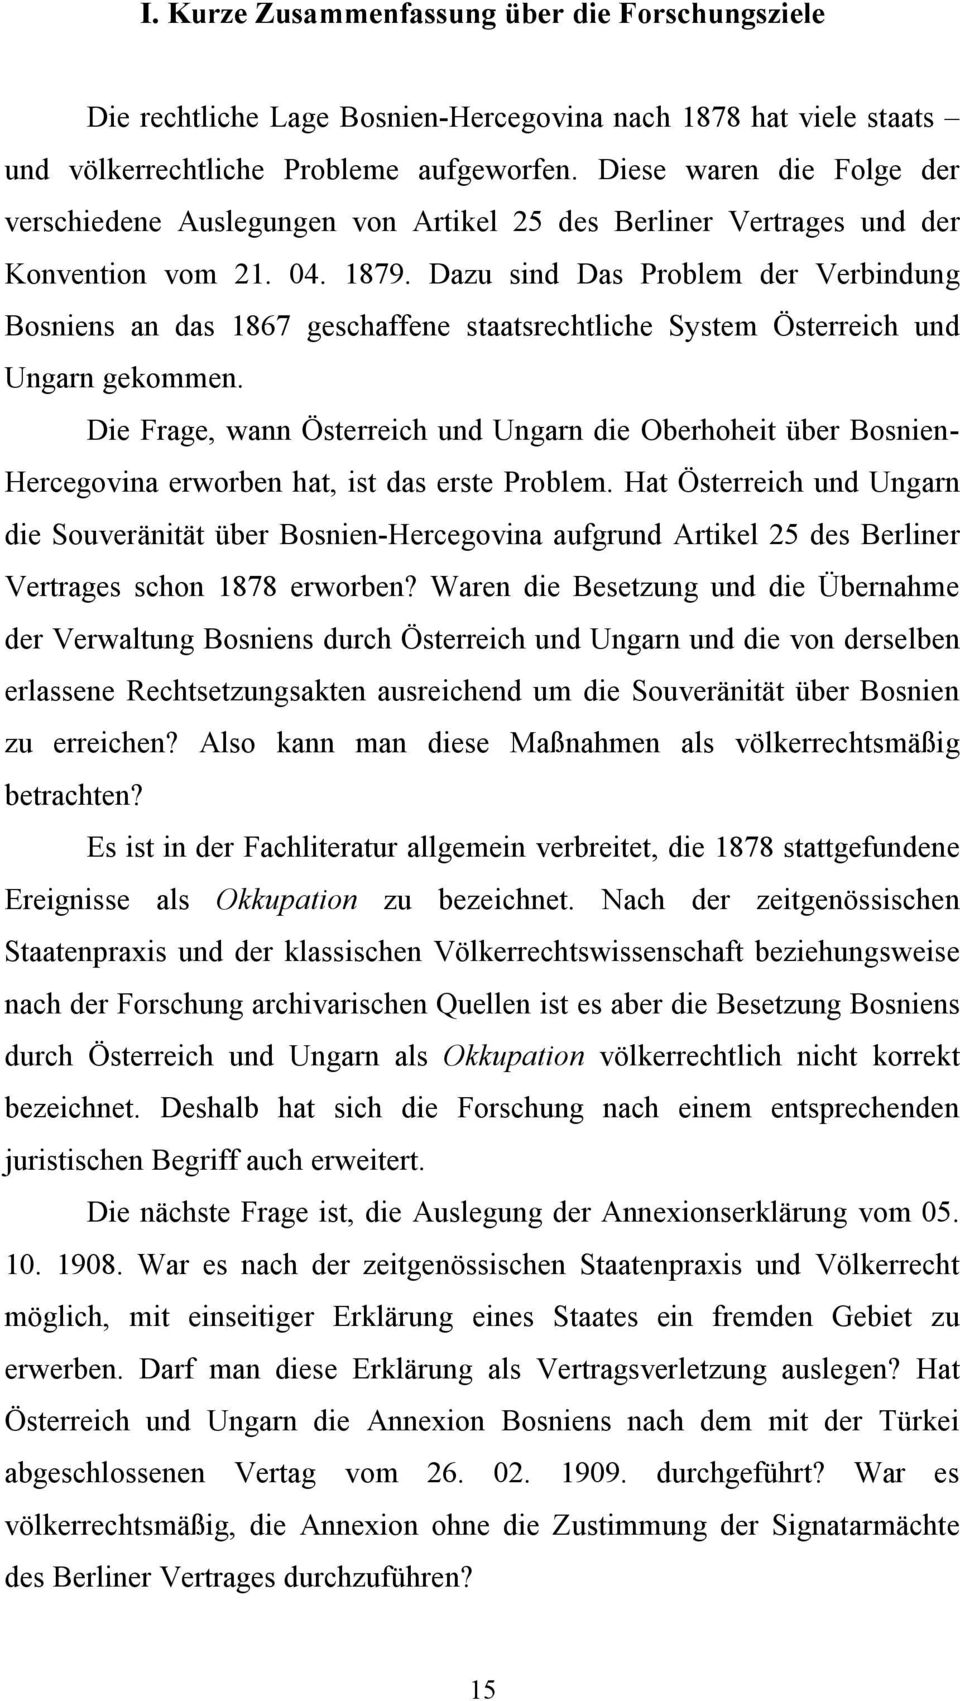 Dazu sind Das Problem der Verbindung Bosniens an das 1867 geschaffene staatsrechtliche System Österreich und Ungarn gekommen.